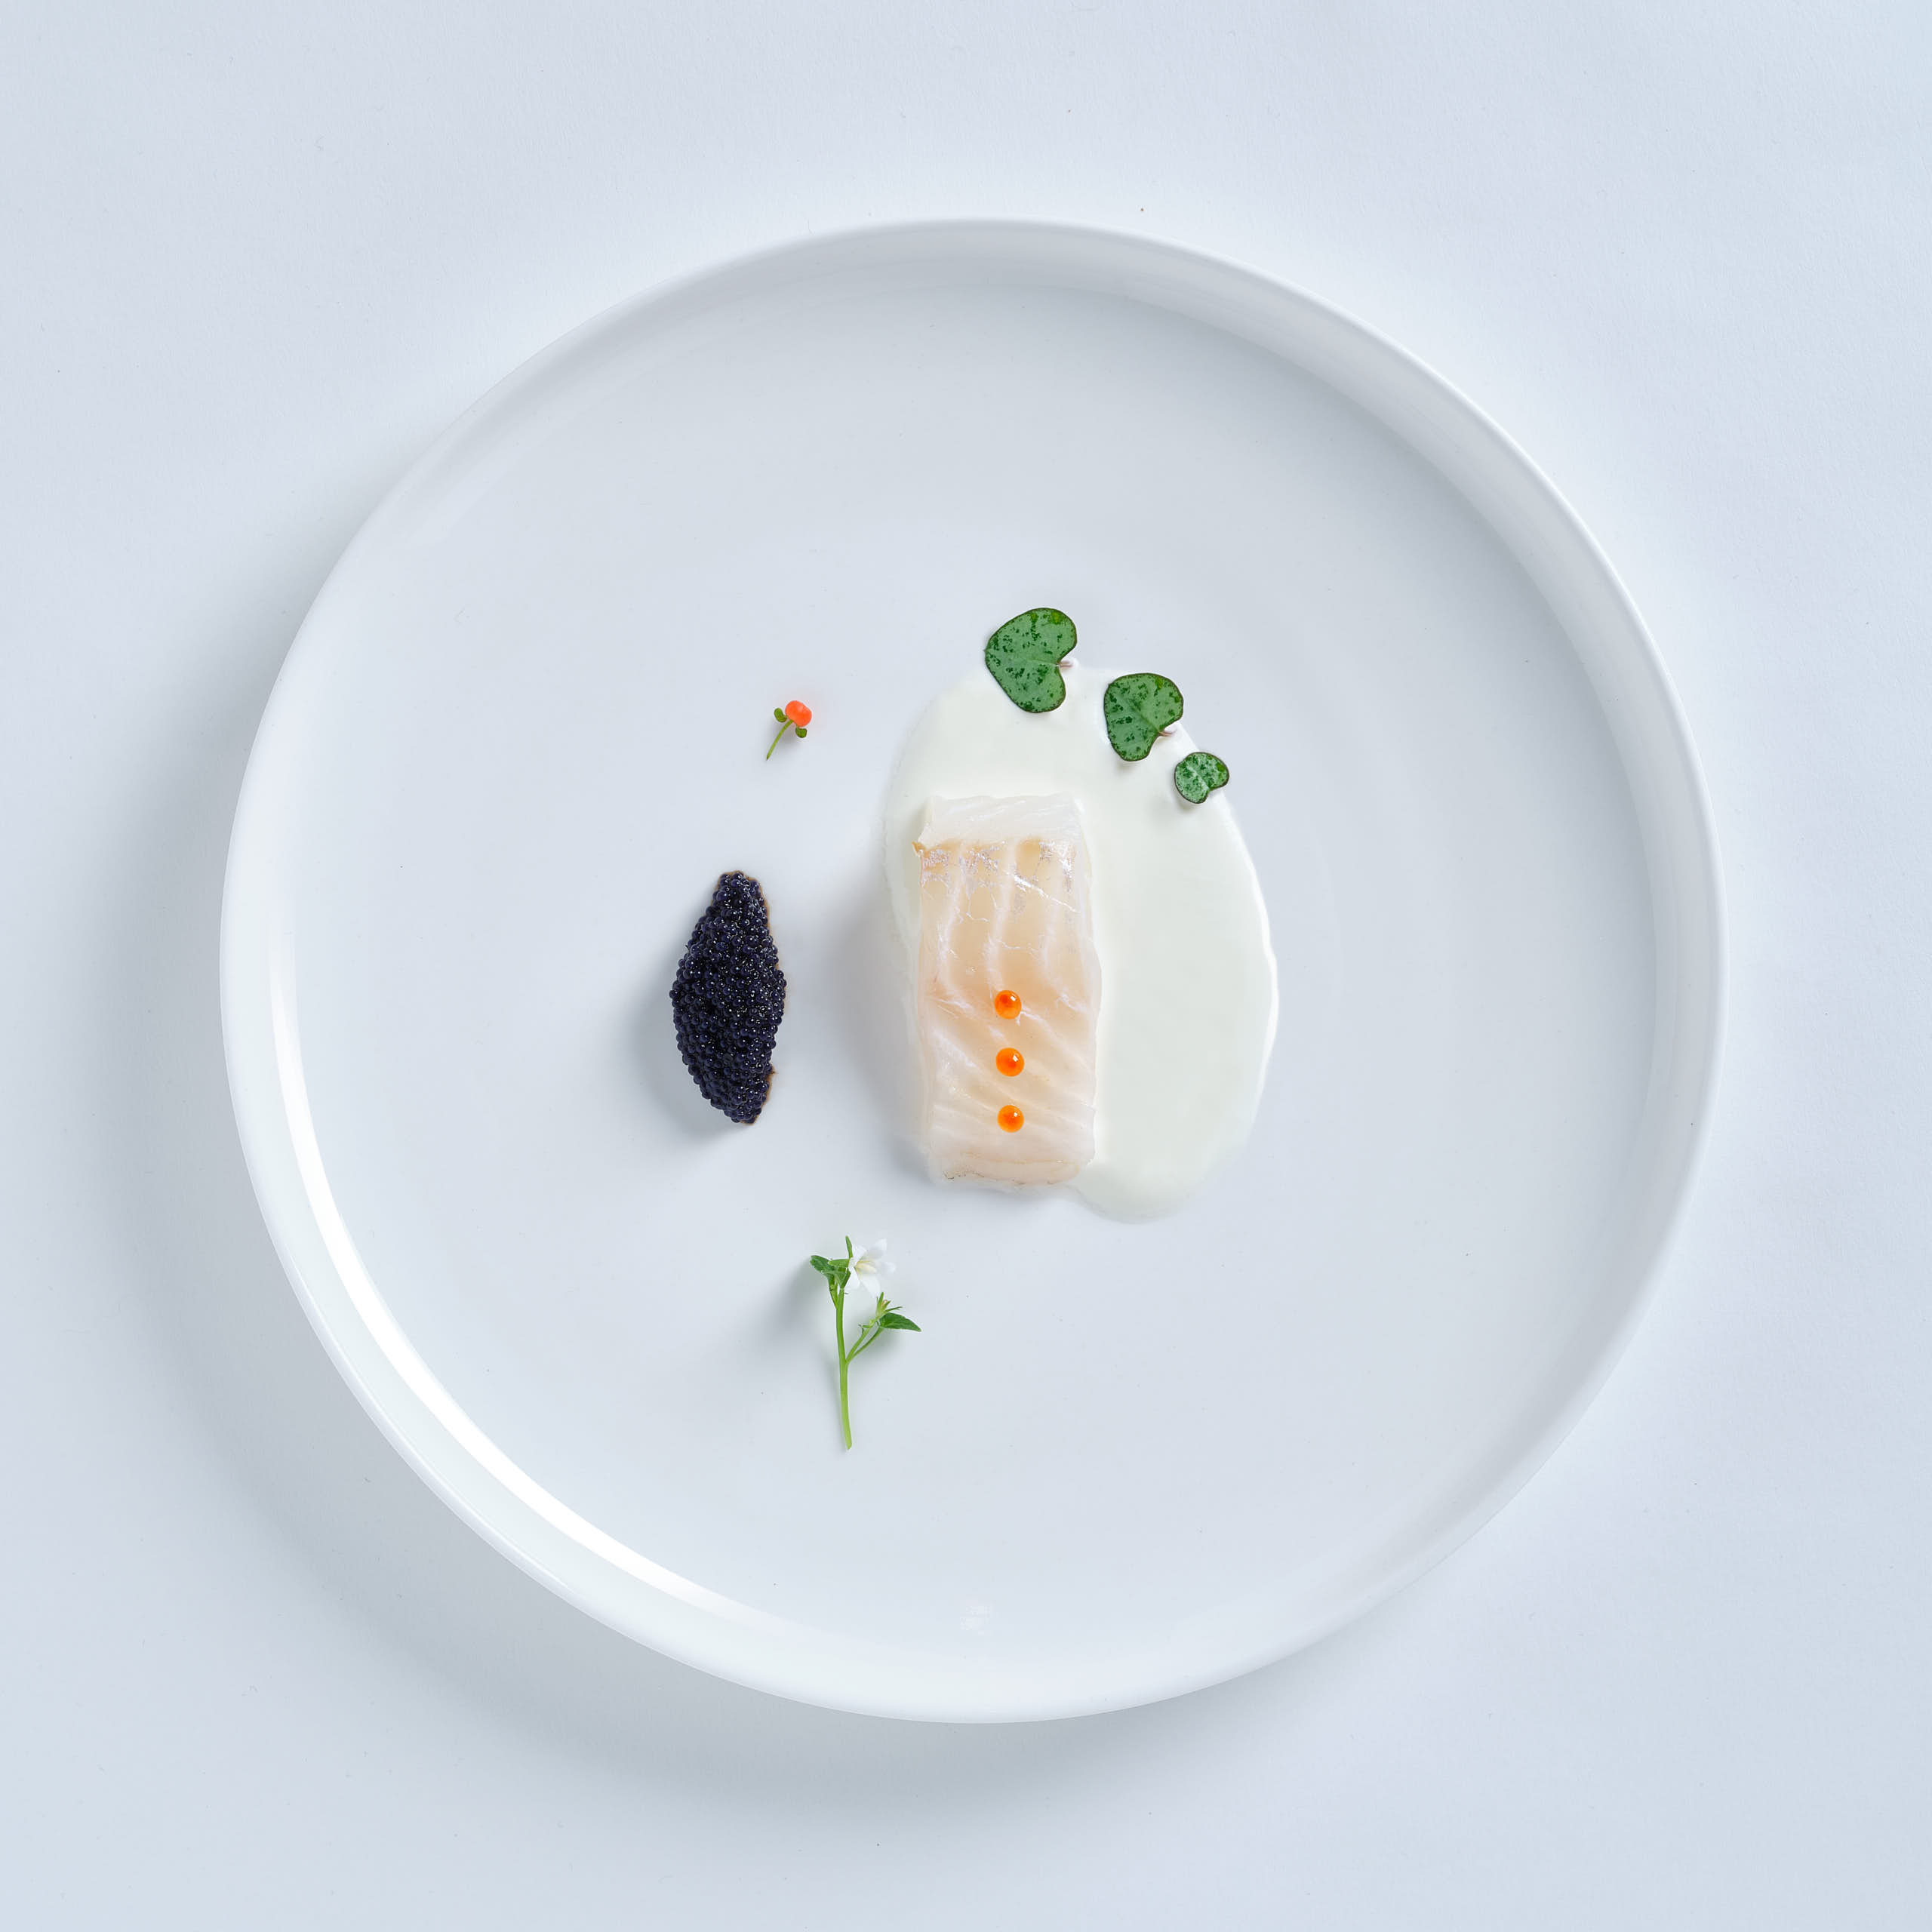 Perfekte Sterneküche. Kaviar mit Dorsch und frischen Kräutern aus dem OBI-Baumarkt